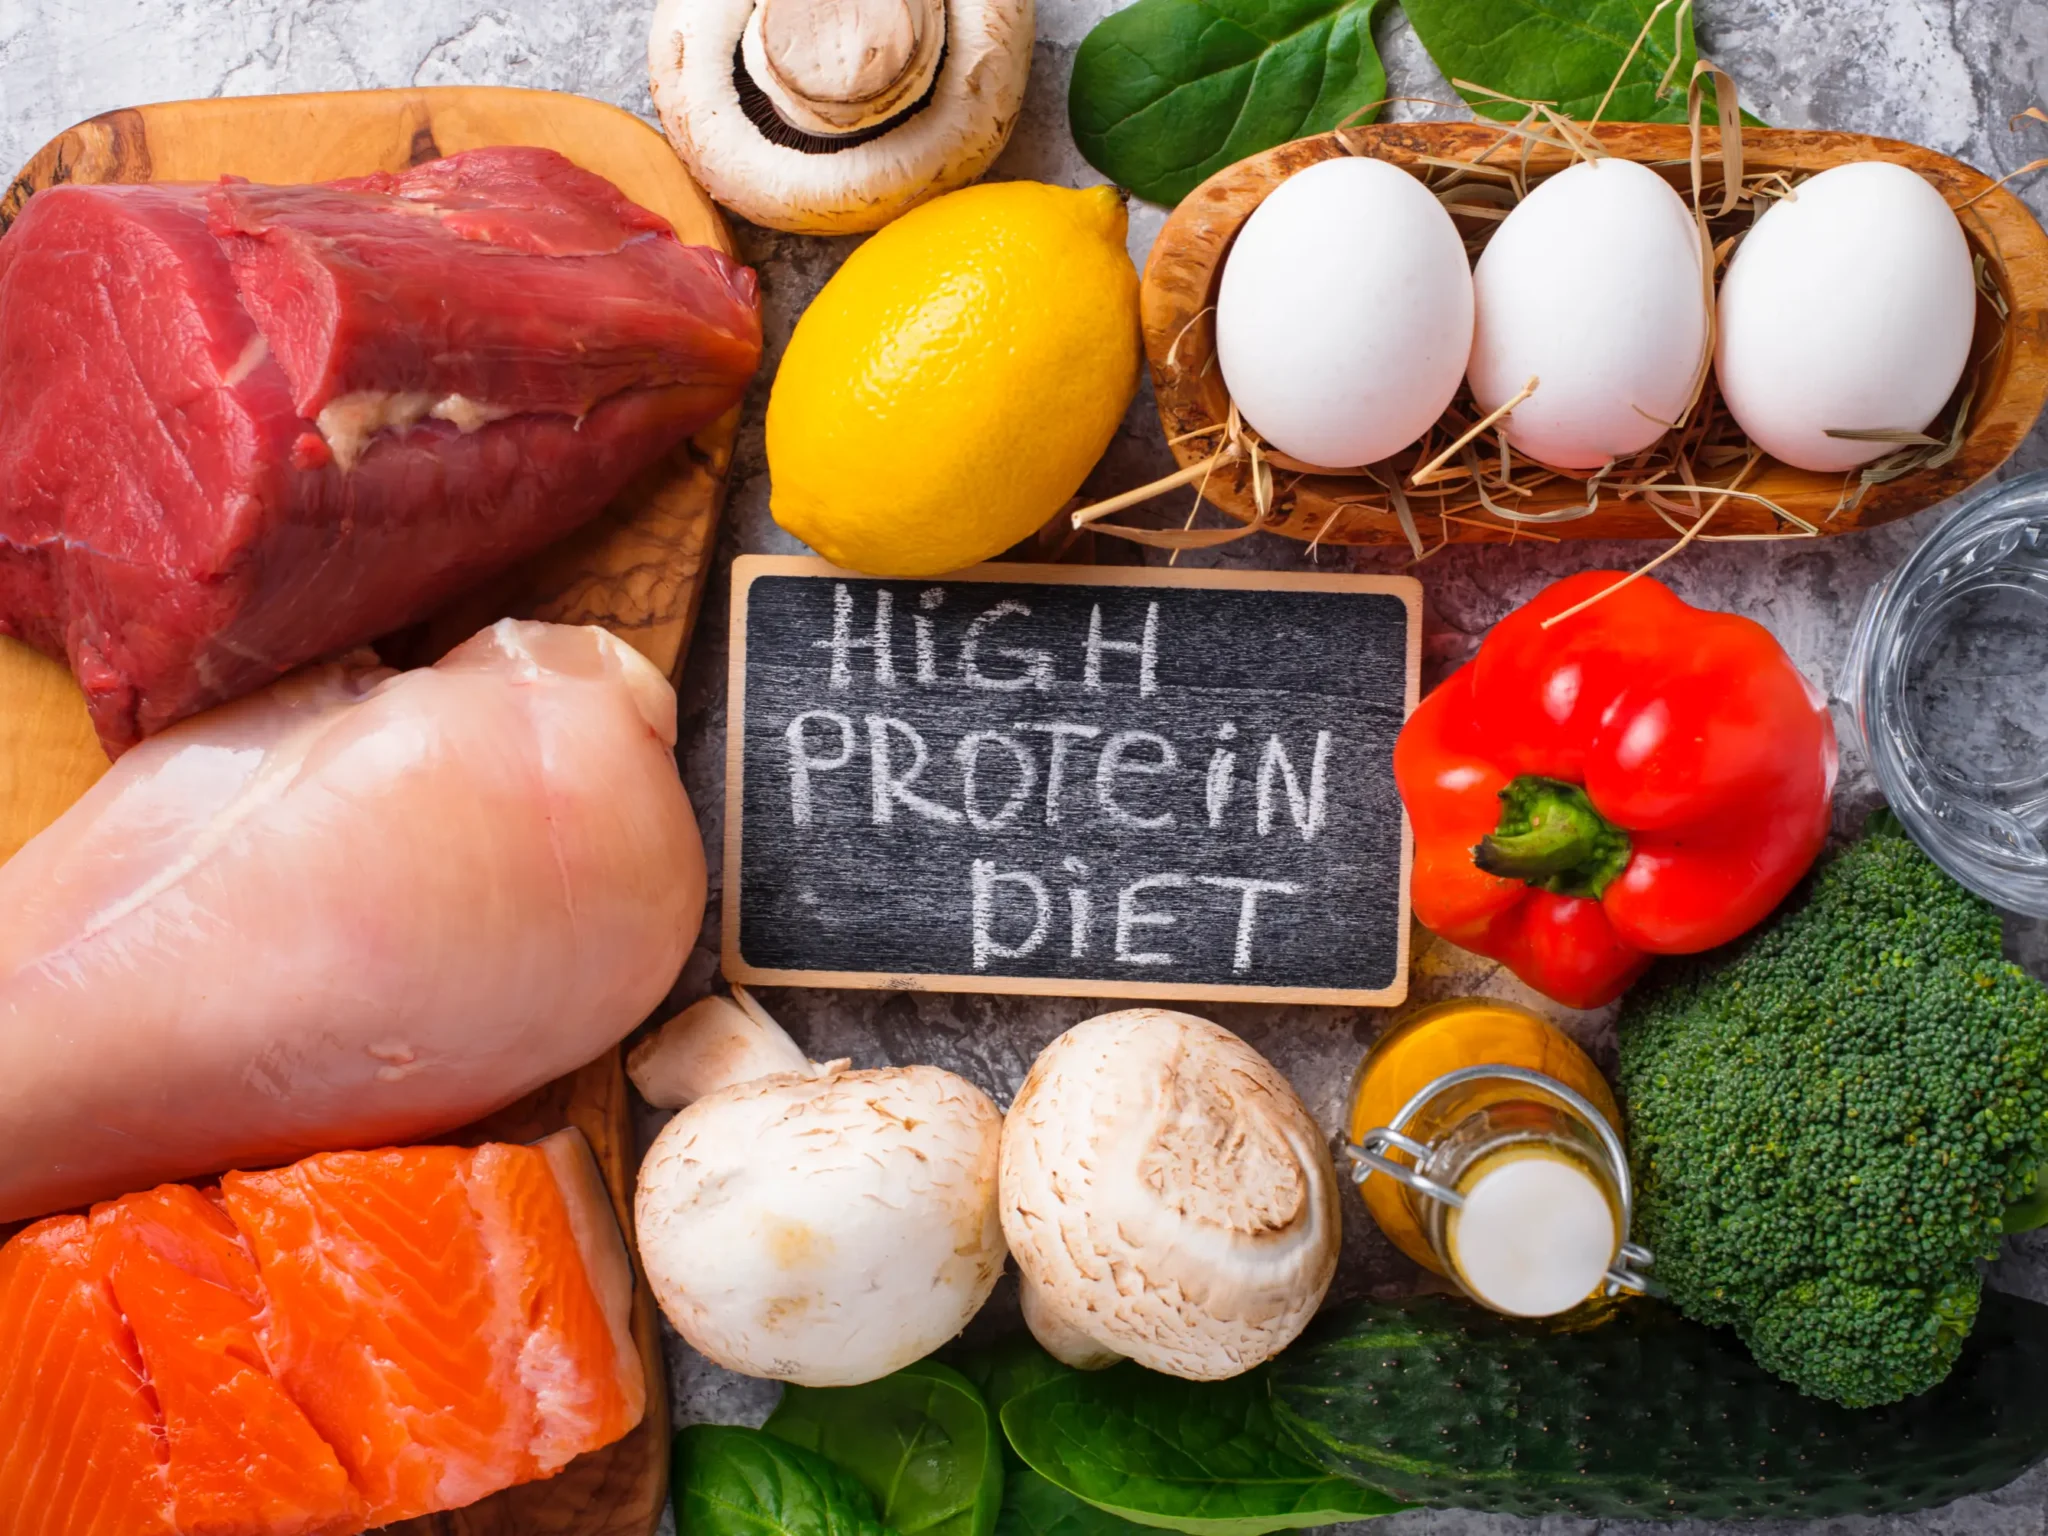 alimenti ricchi di proteina, cosa mangiare nella dieta chetogenica